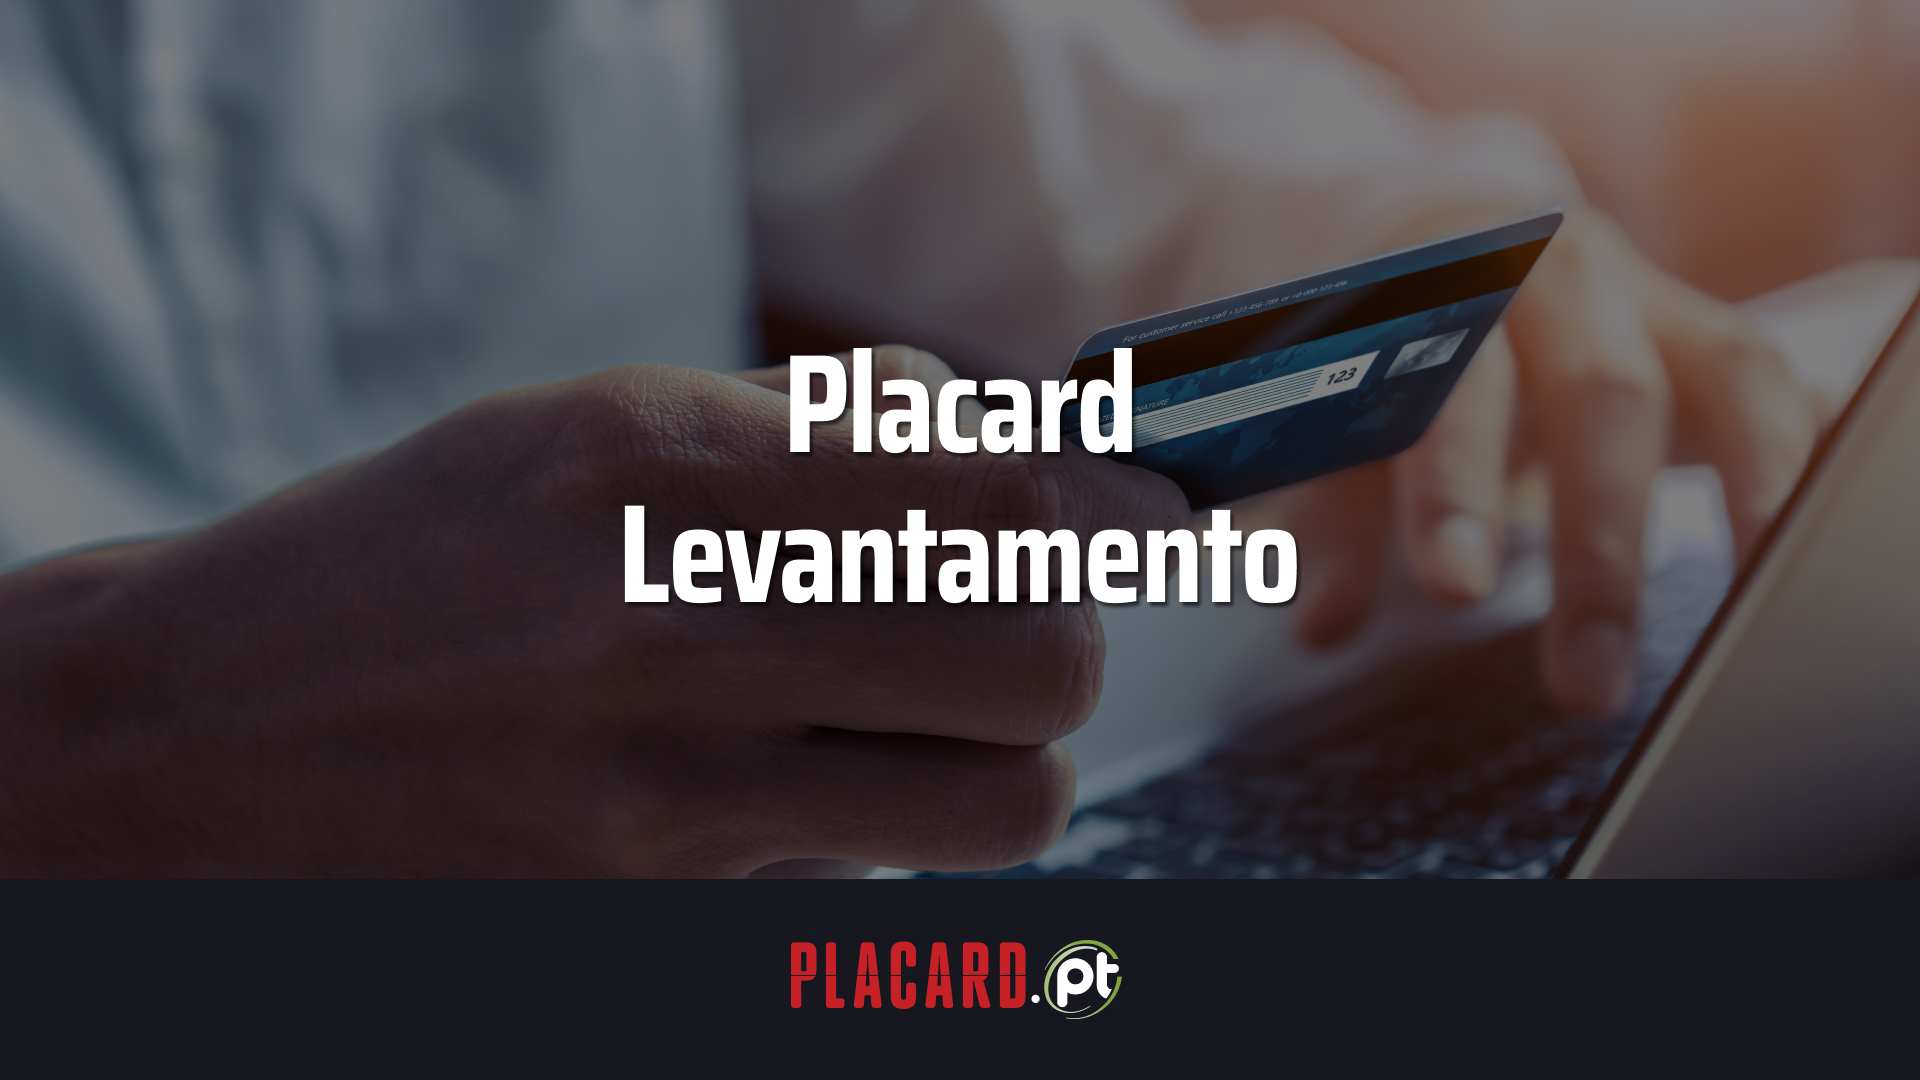 placard levantamentos - Placard Levantamentos: Como Receber os Prémios do Placard.pt